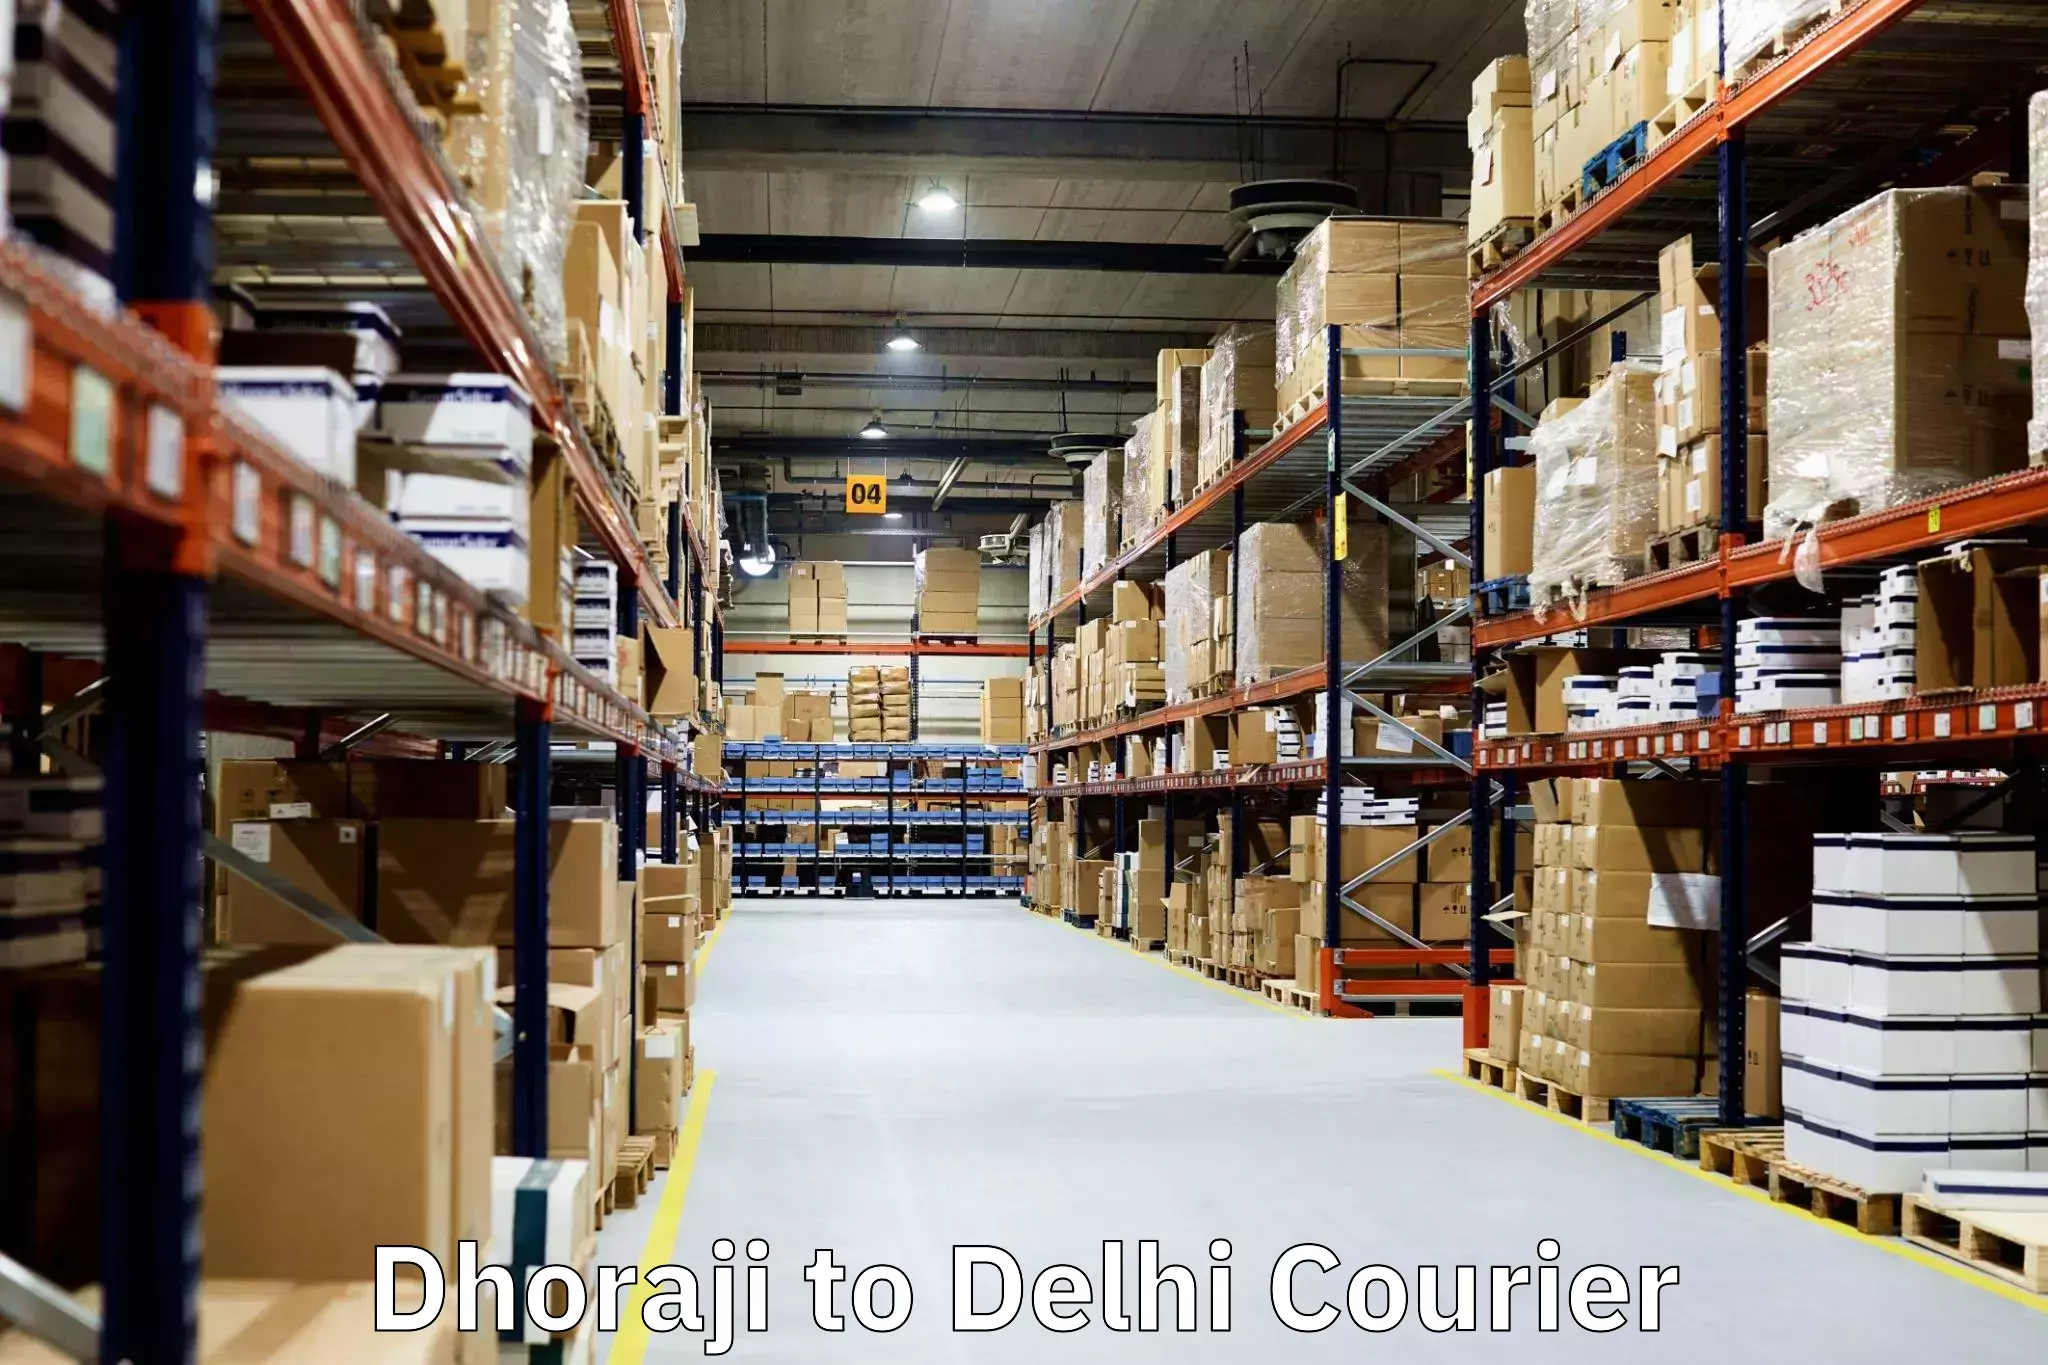 Furniture moving assistance Dhoraji to Delhi